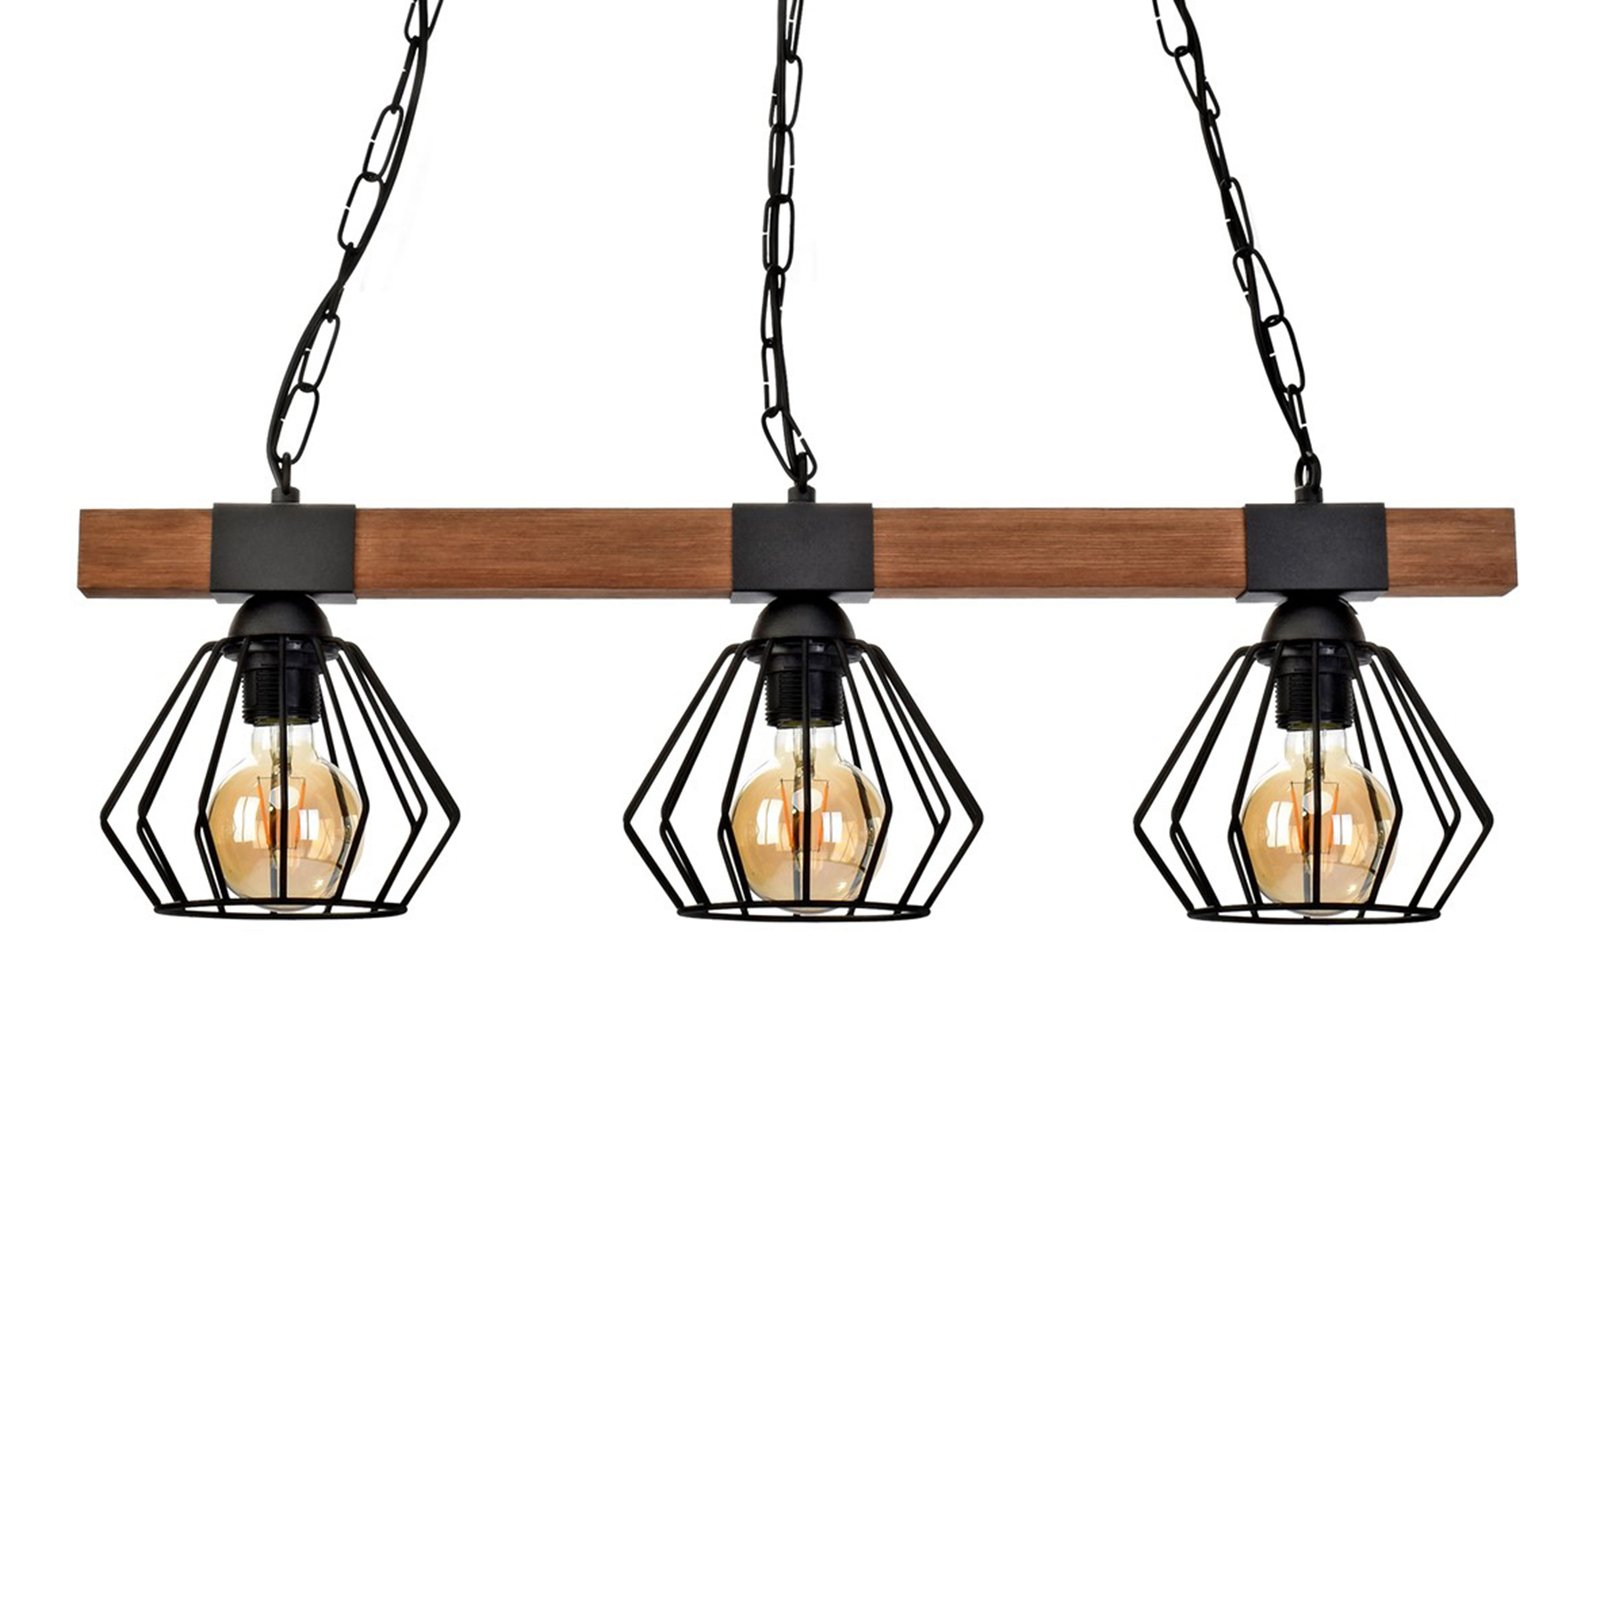 Hanglamp Ulf met houten balk, 3-lamps